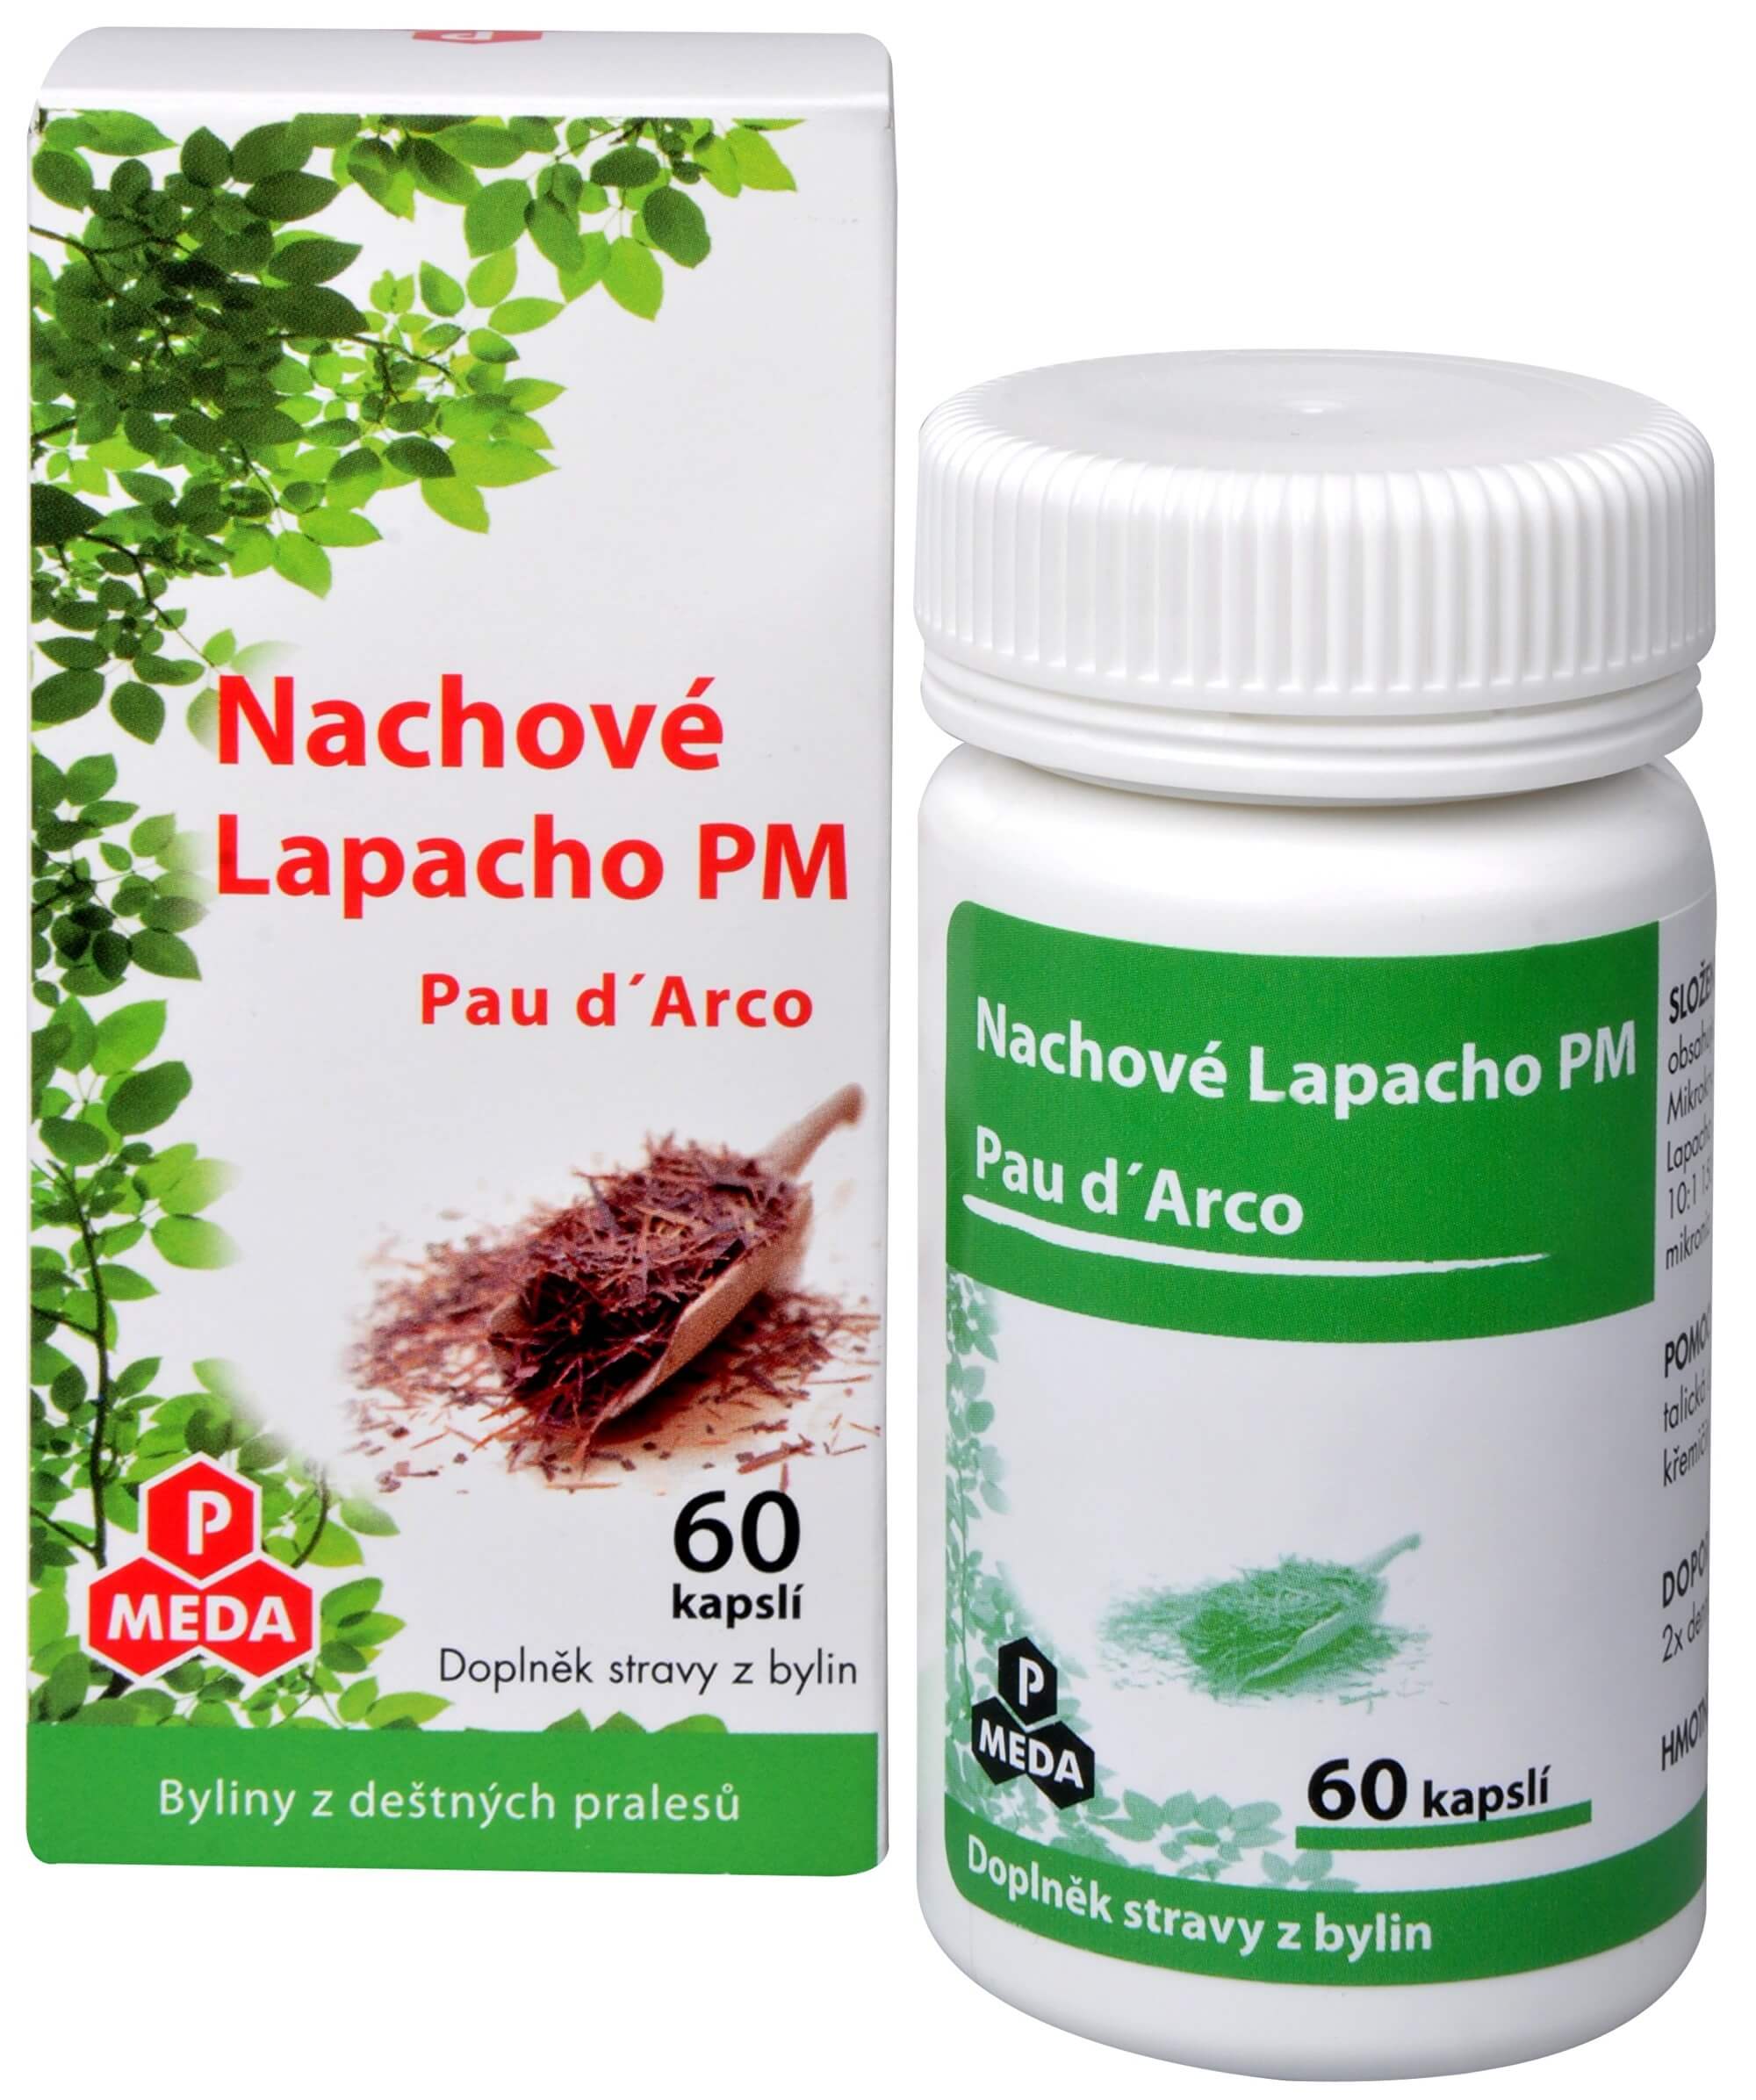 Zobrazit detail výrobku Purus Meda Nachové Lapacho PM (Pau d´Arco) 60 kapslí